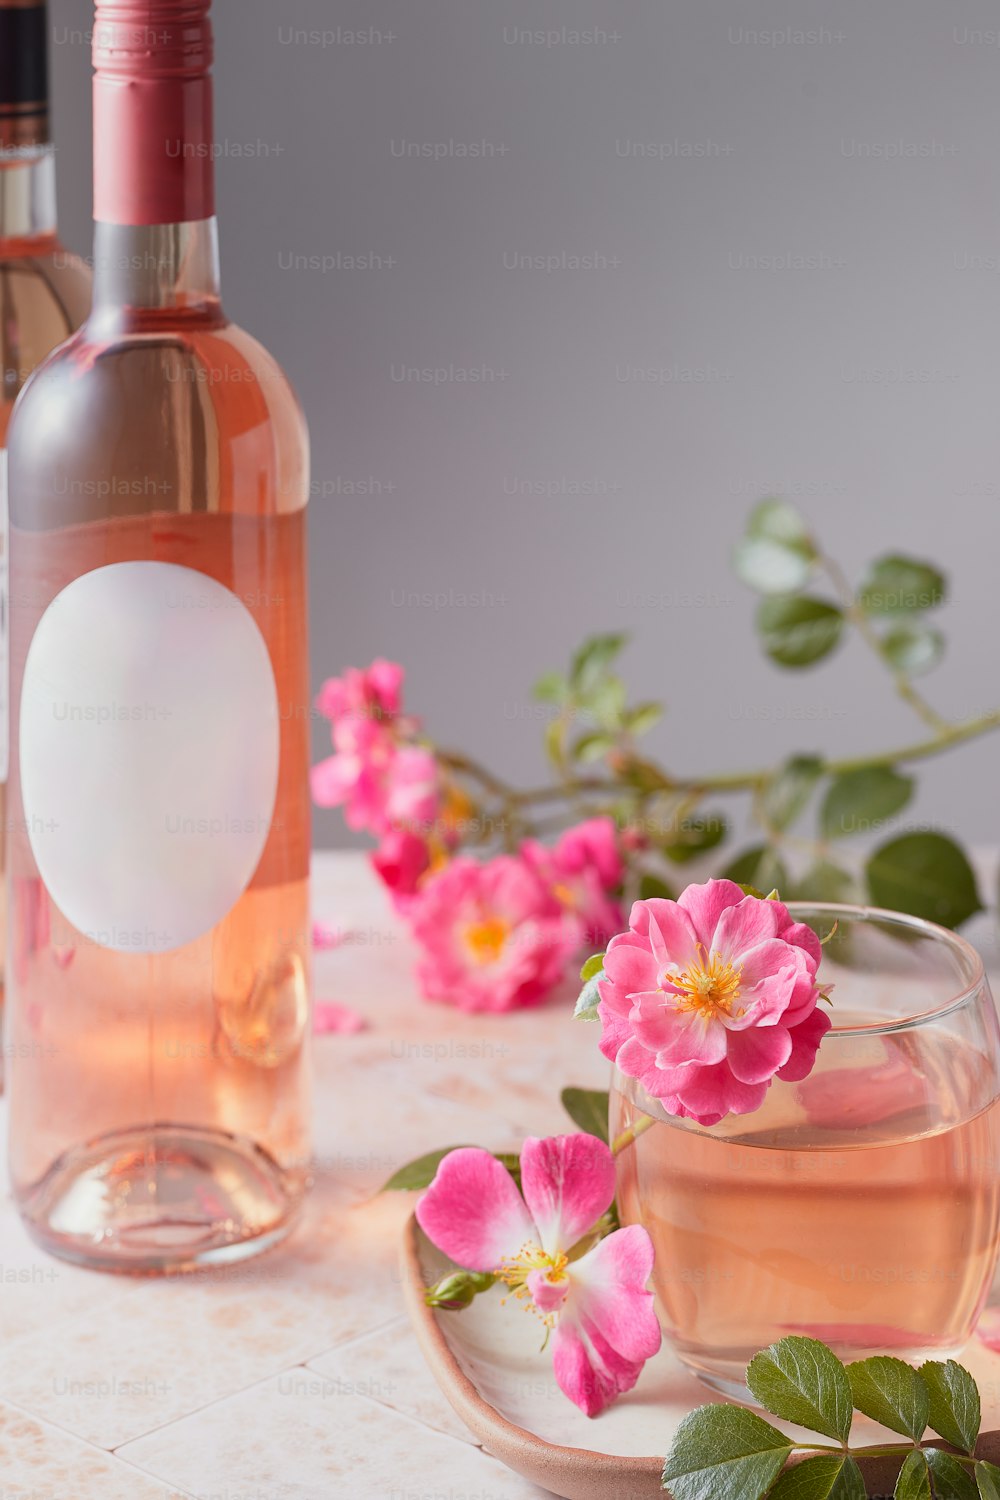 um copo de vinho rosa ao lado de uma garrafa de vinho